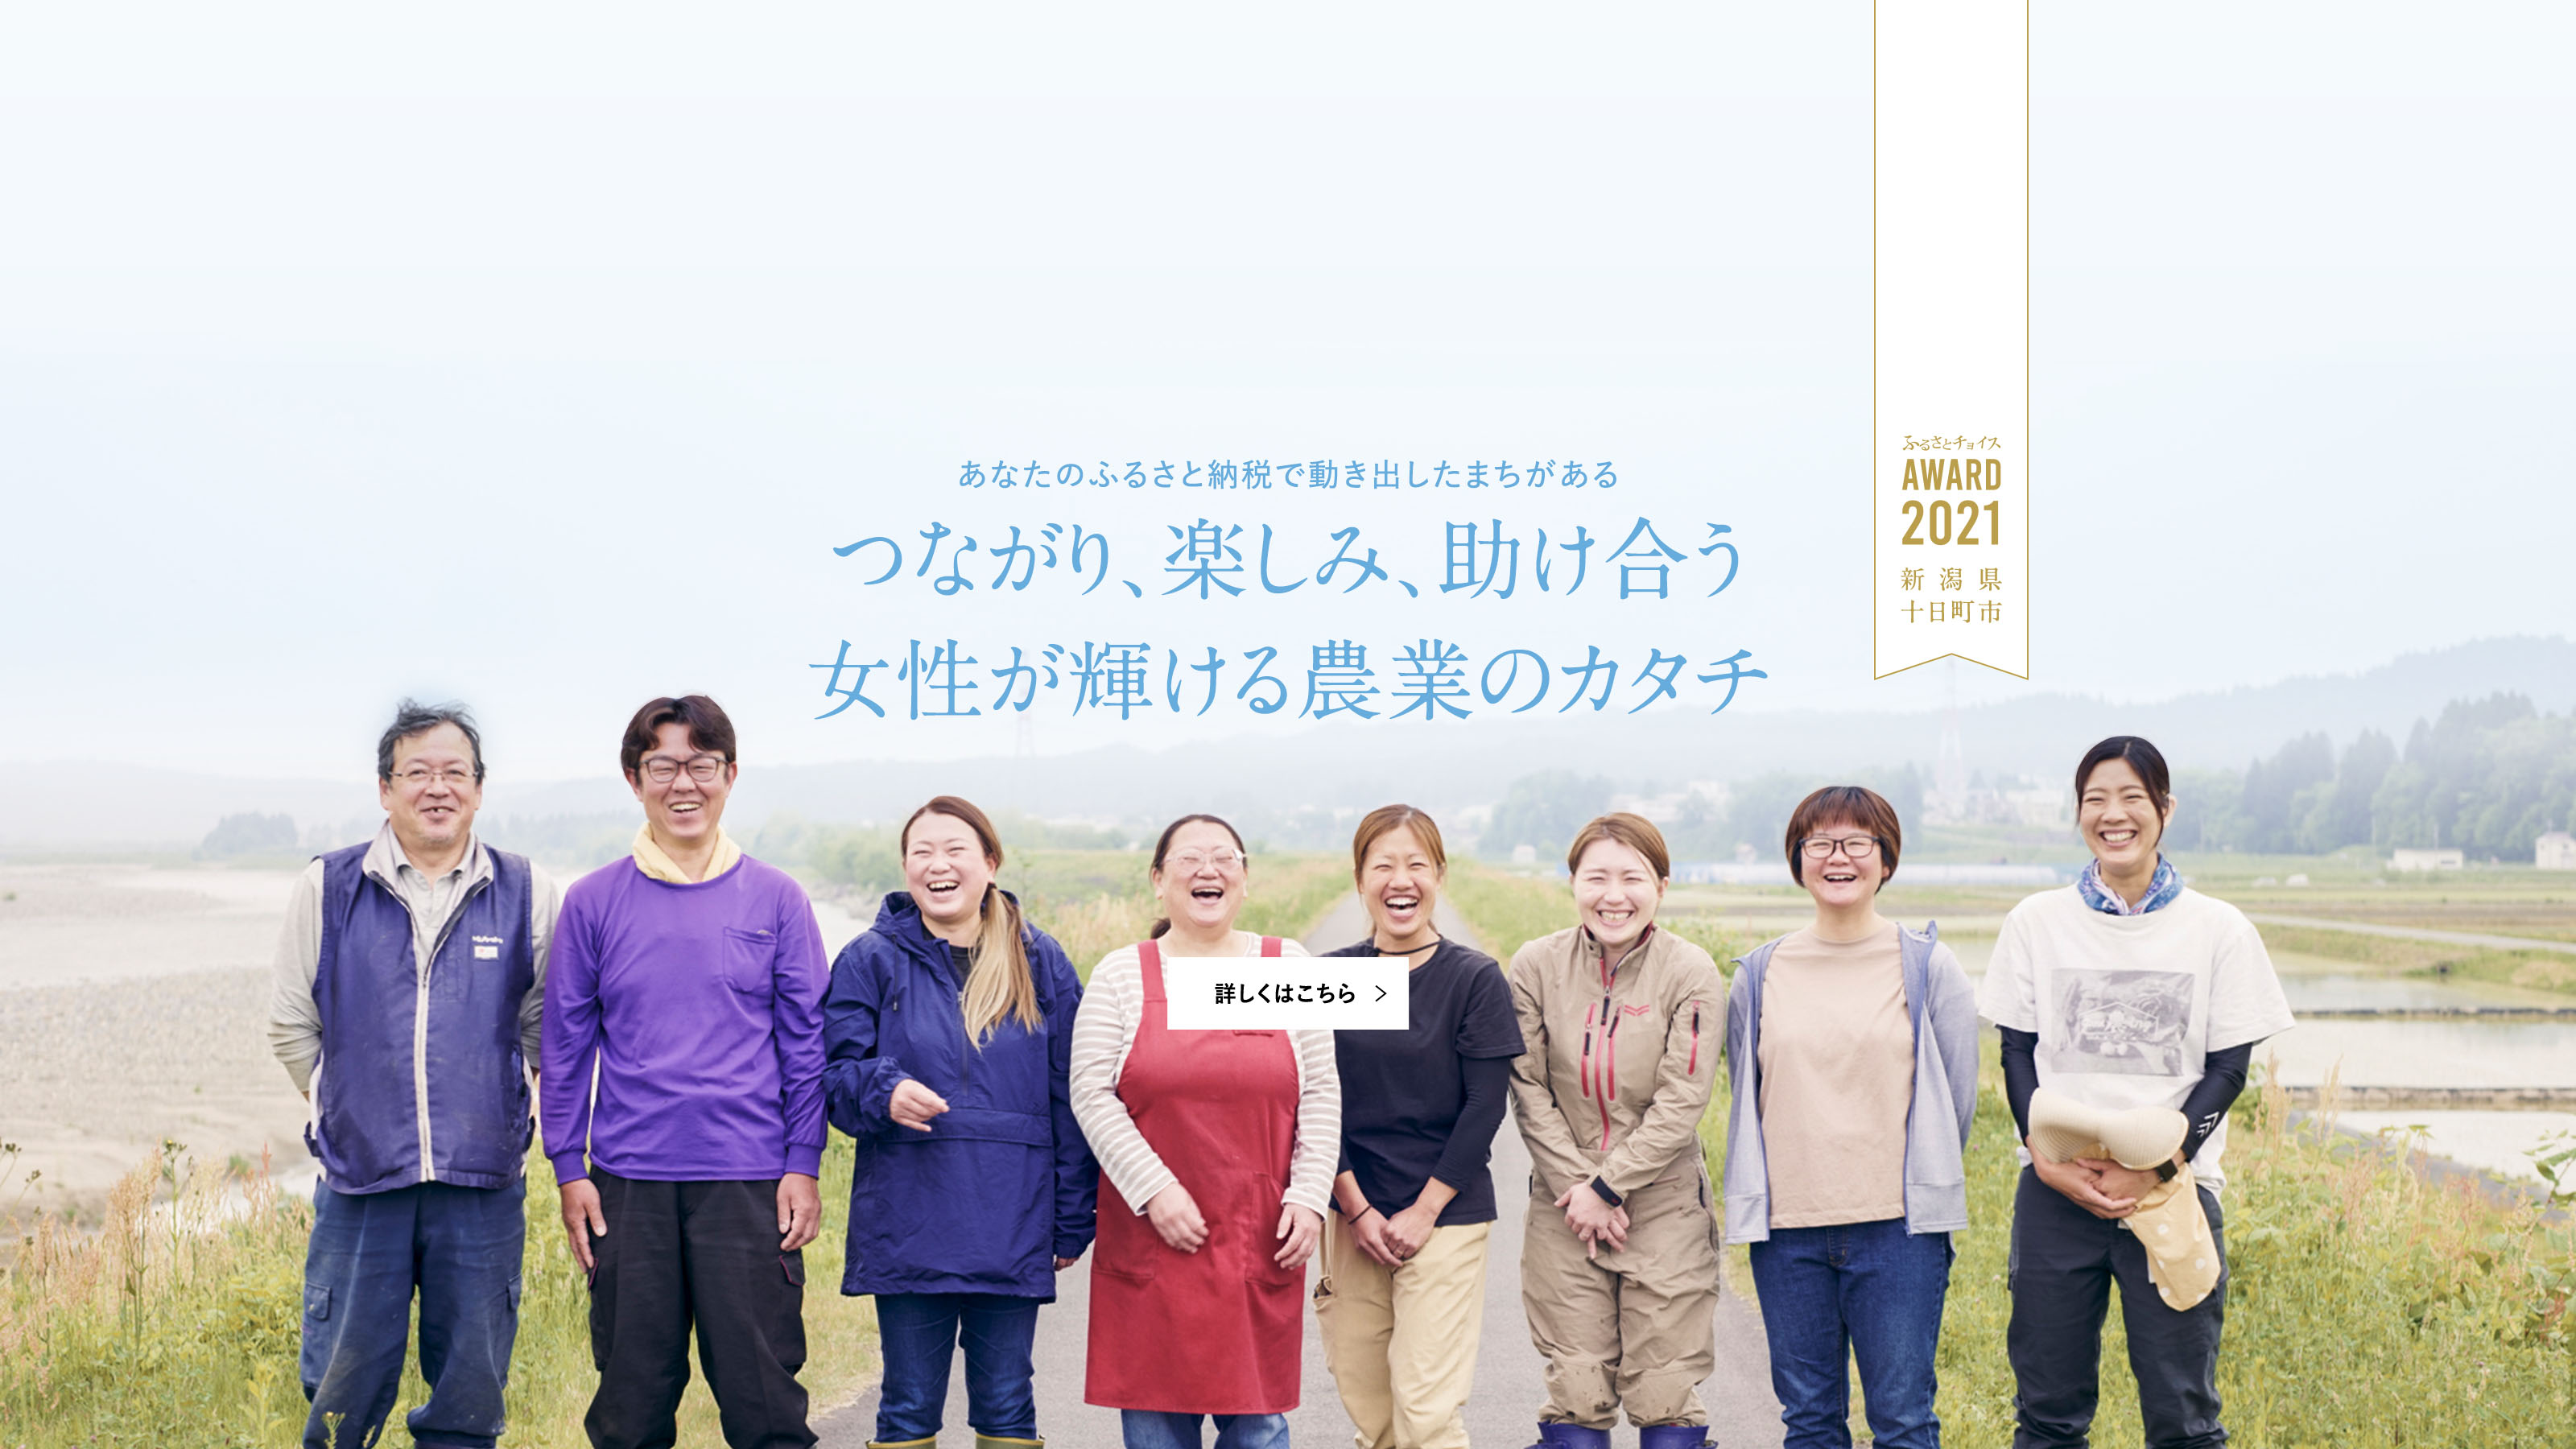 ふるさとチョイスAWARD 2021 新潟県十日町市 あなたのふるさと納税で動き出したまちがある つながり、楽しみ、助け合う 女性が輝ける農業のカタチ